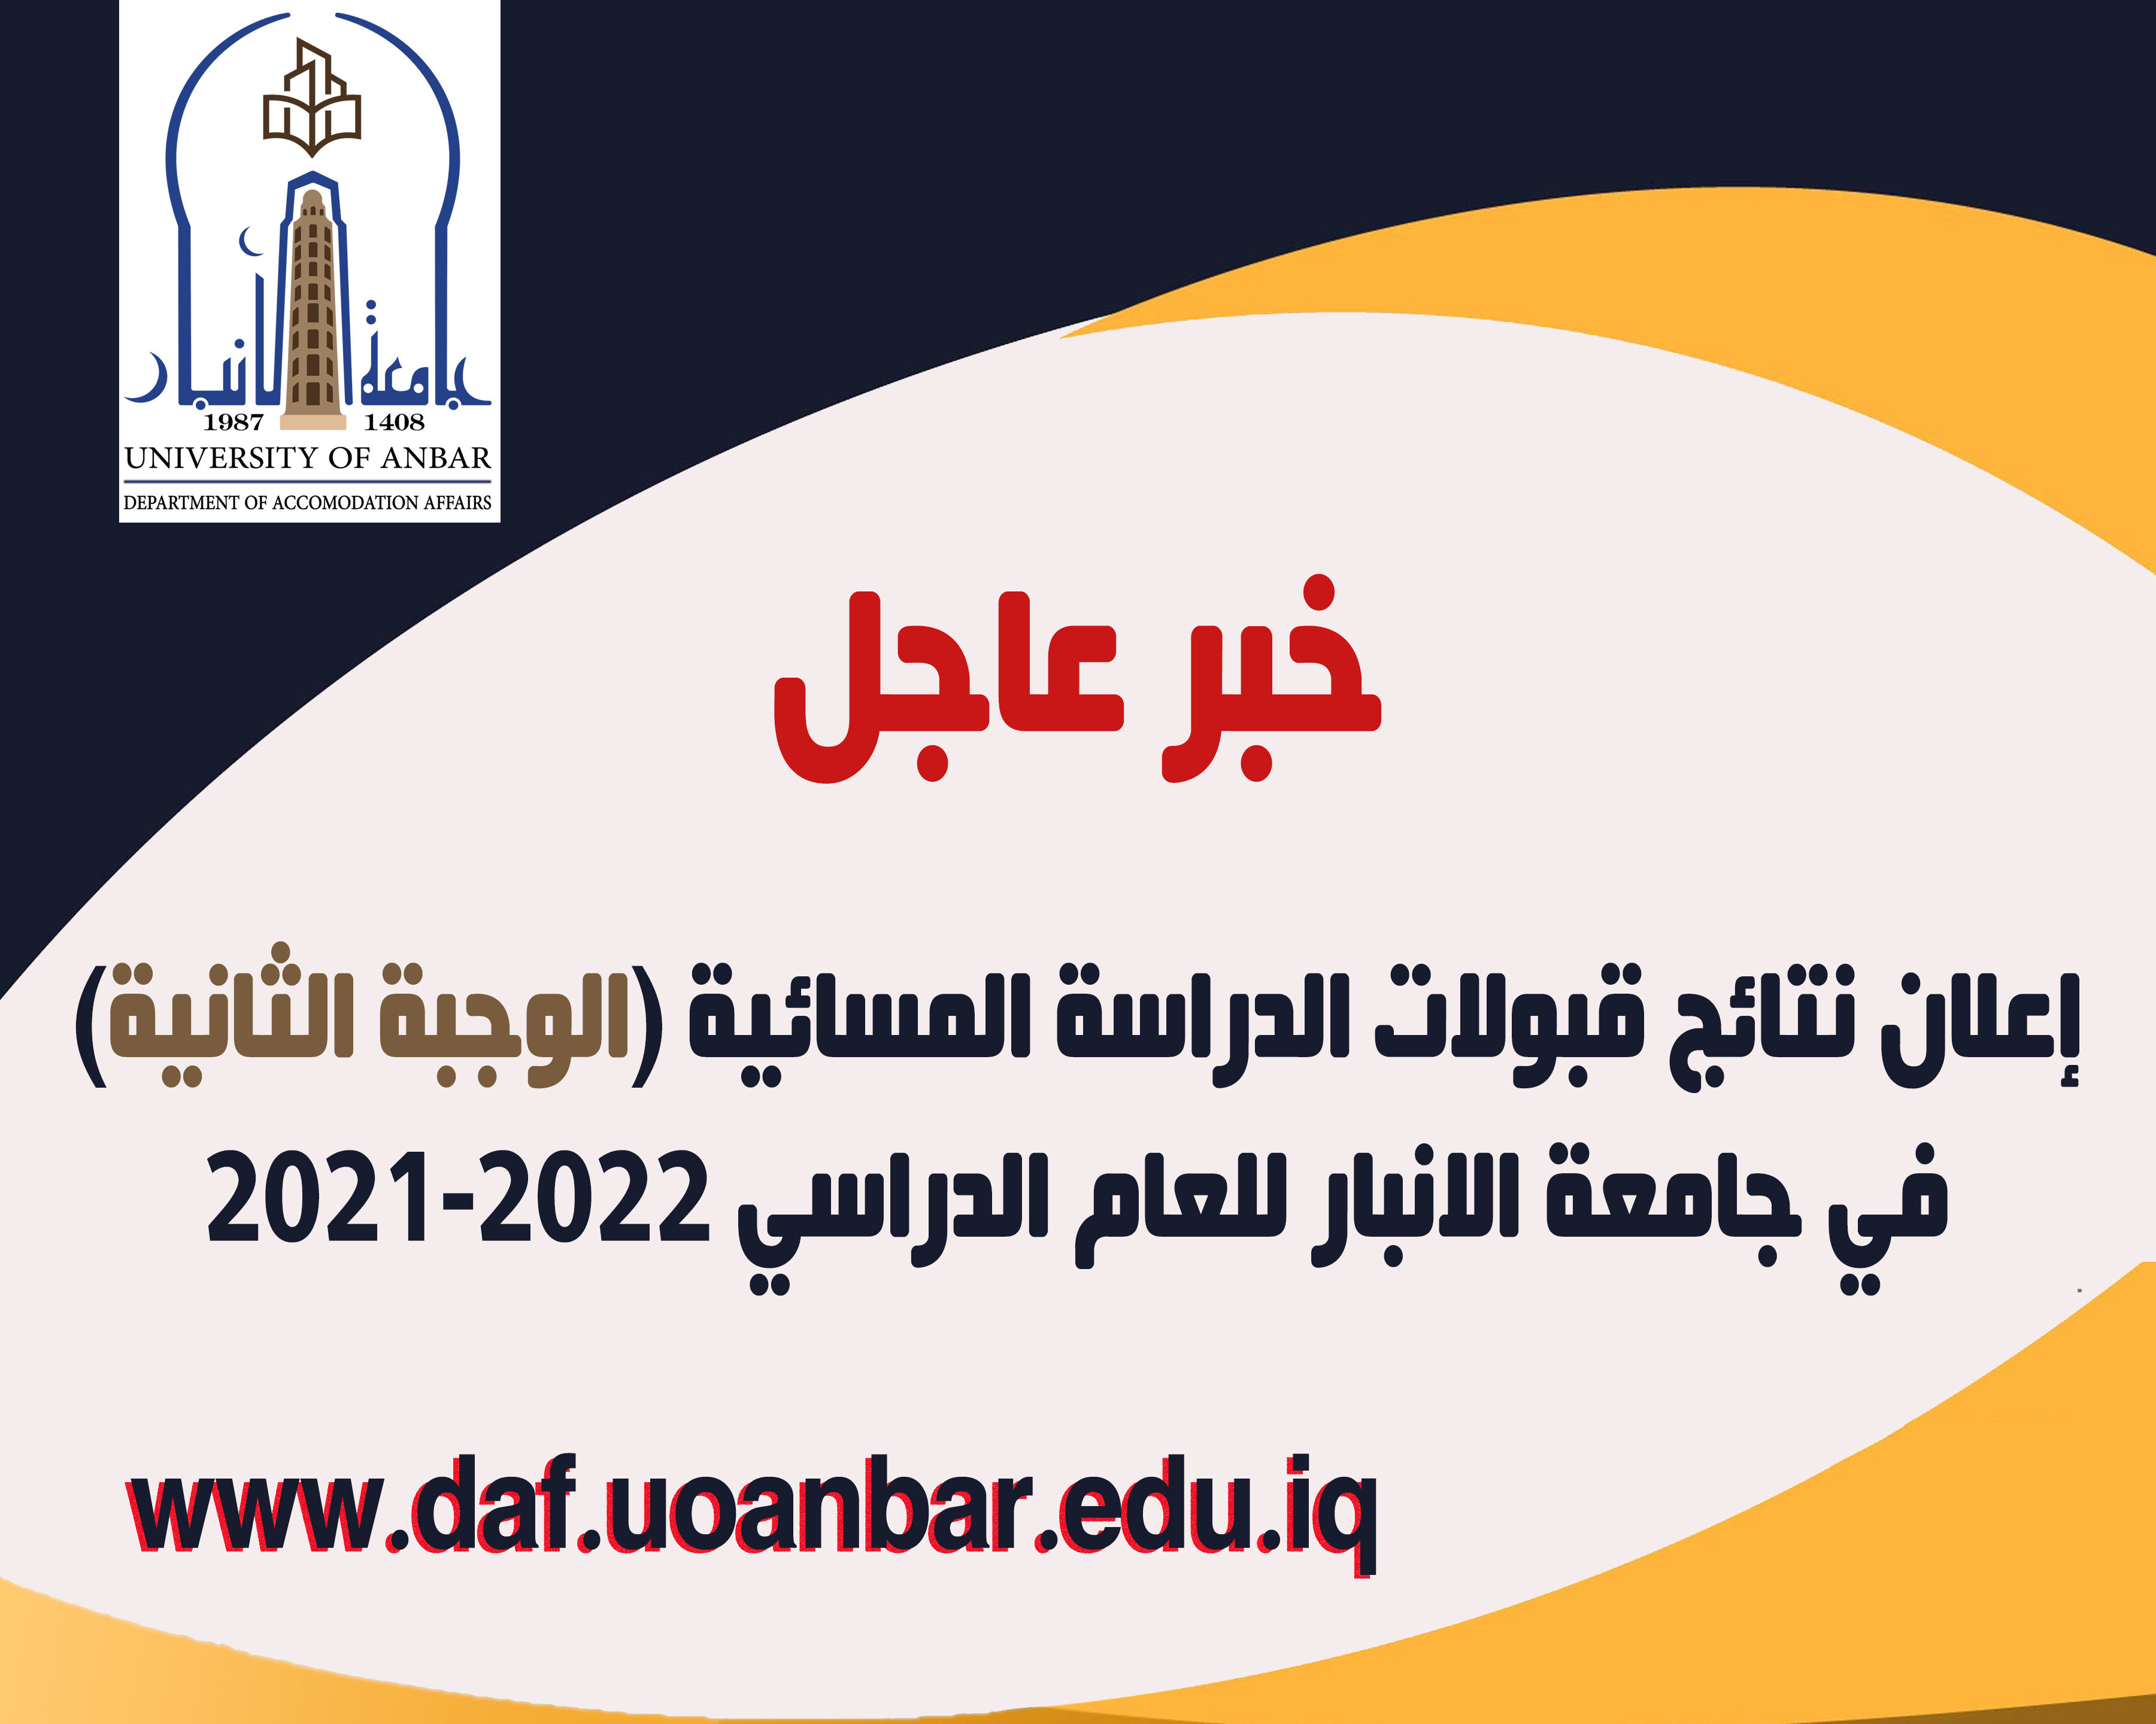 اعلان نتائج قبولات الدراسة المسائية (الوجبة الثانية) في جامعة الانبار للعام الدراسي 2021-2022